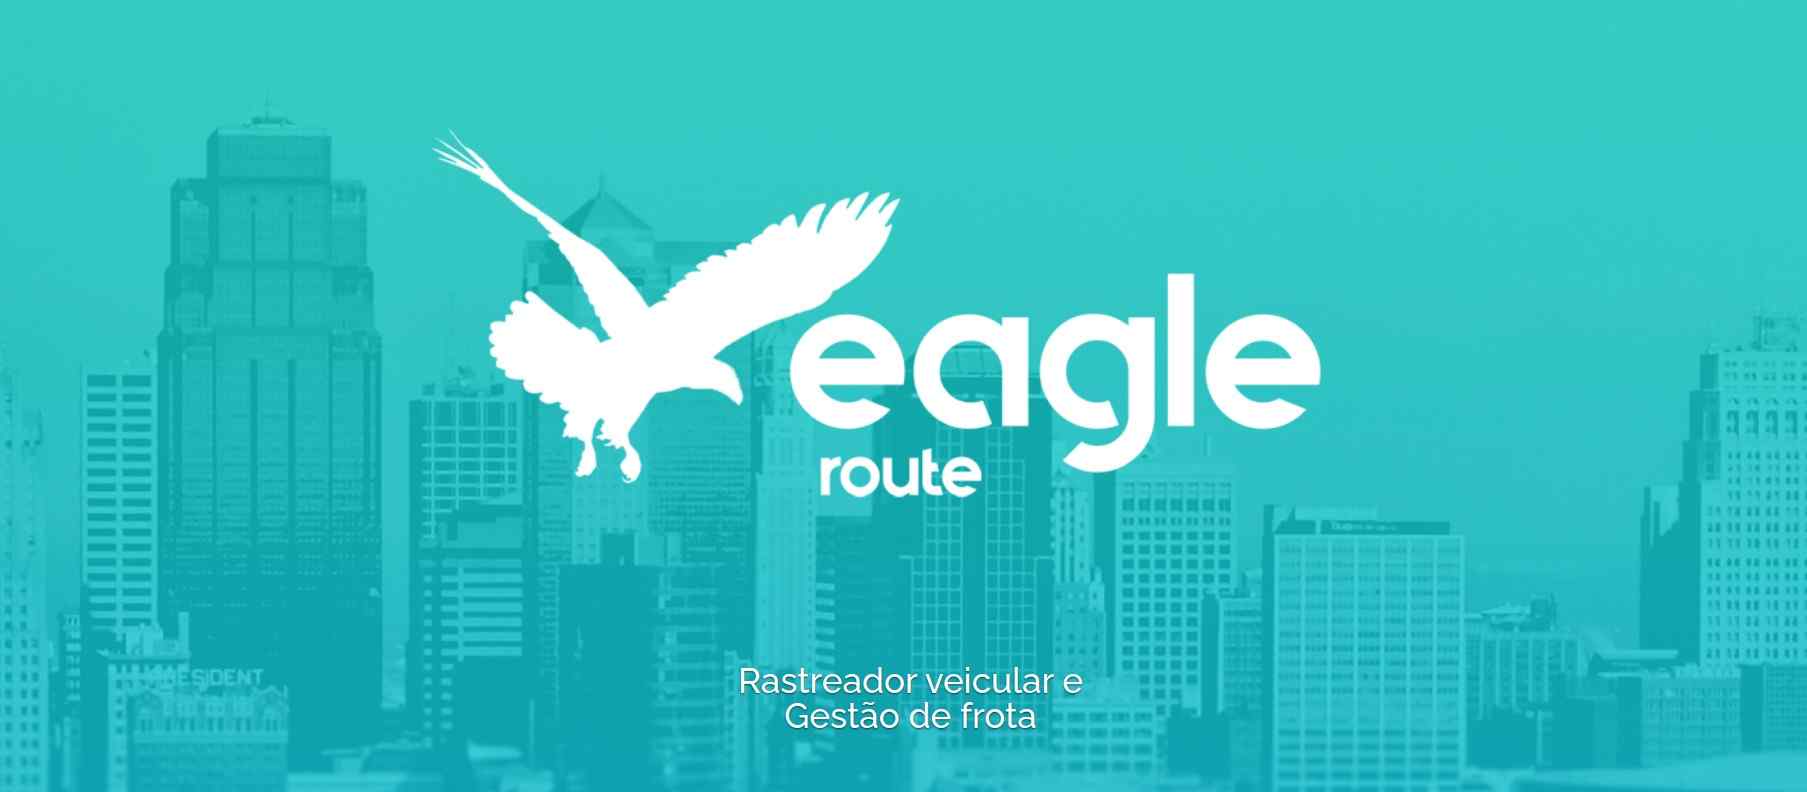 Eagle route